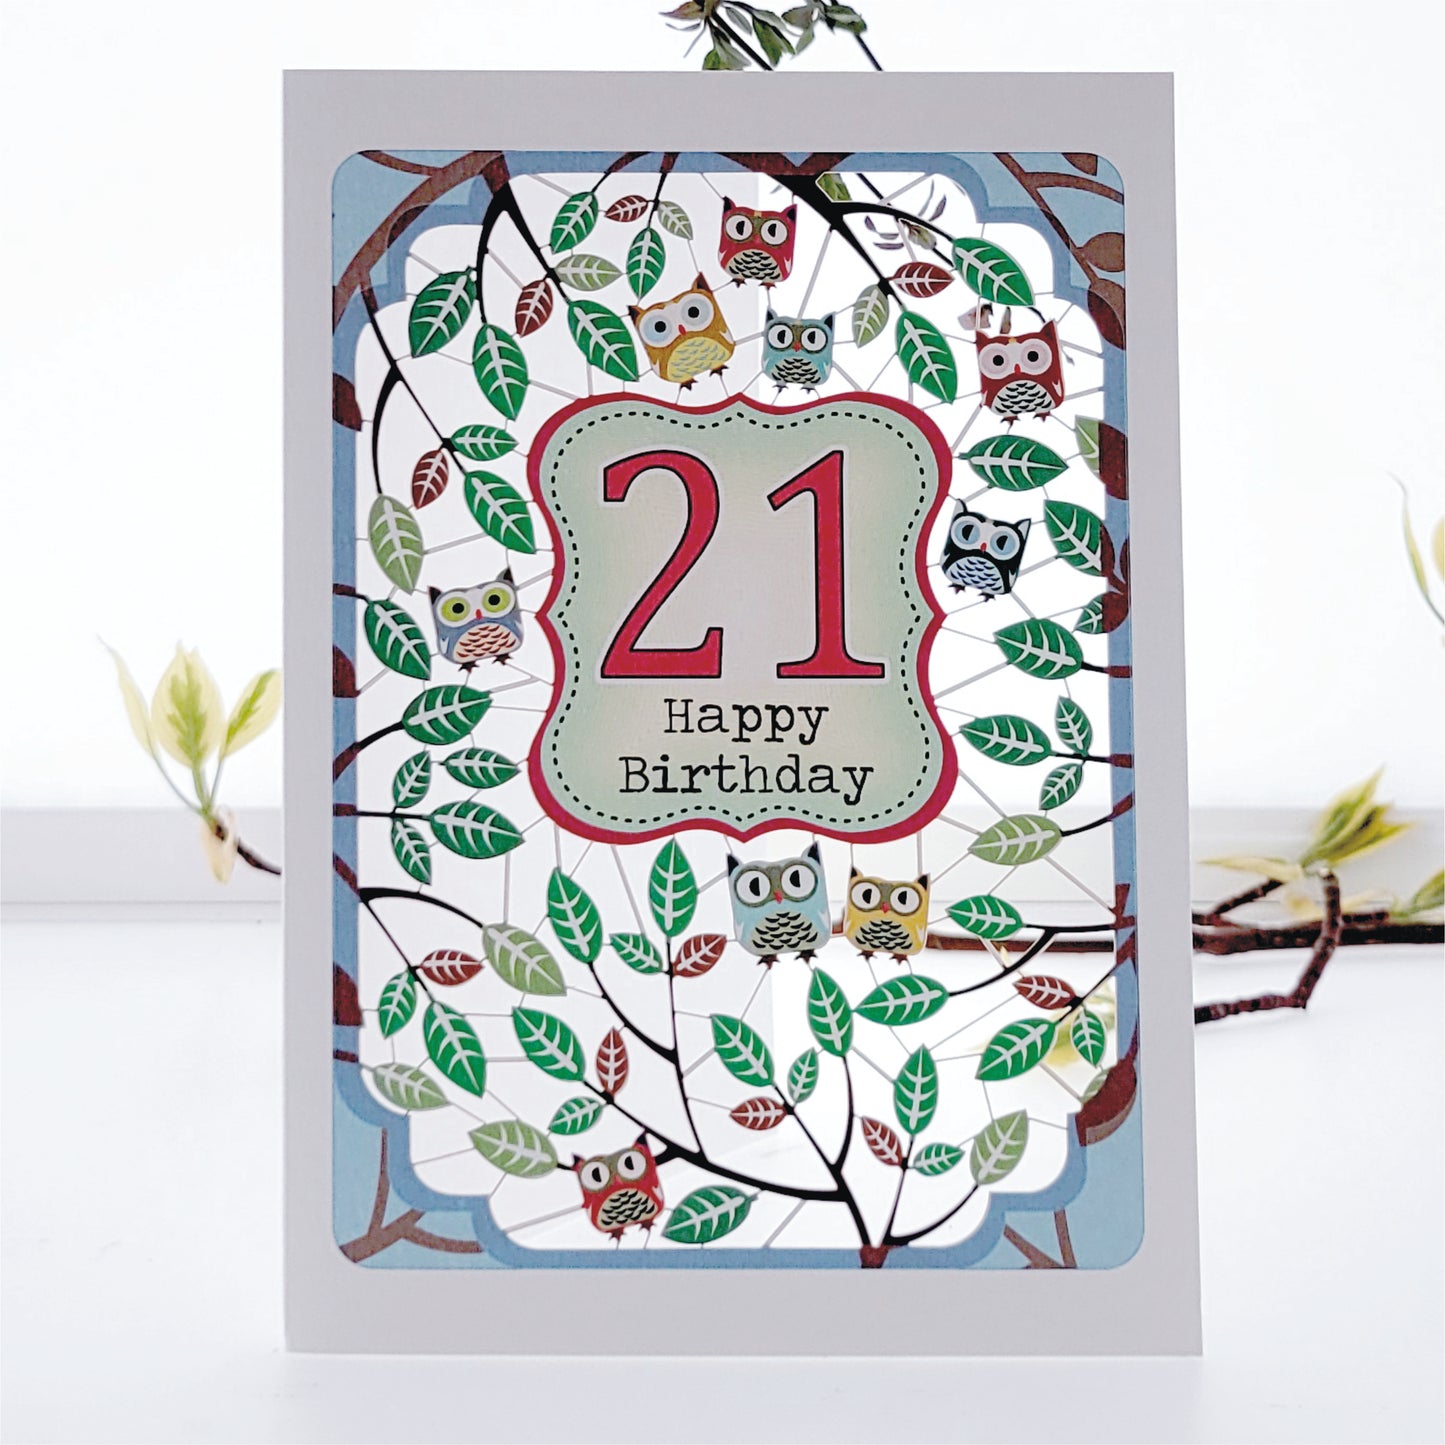 Age 21 Birthday Card, 21st Birthday Card, Owls Card - PM833